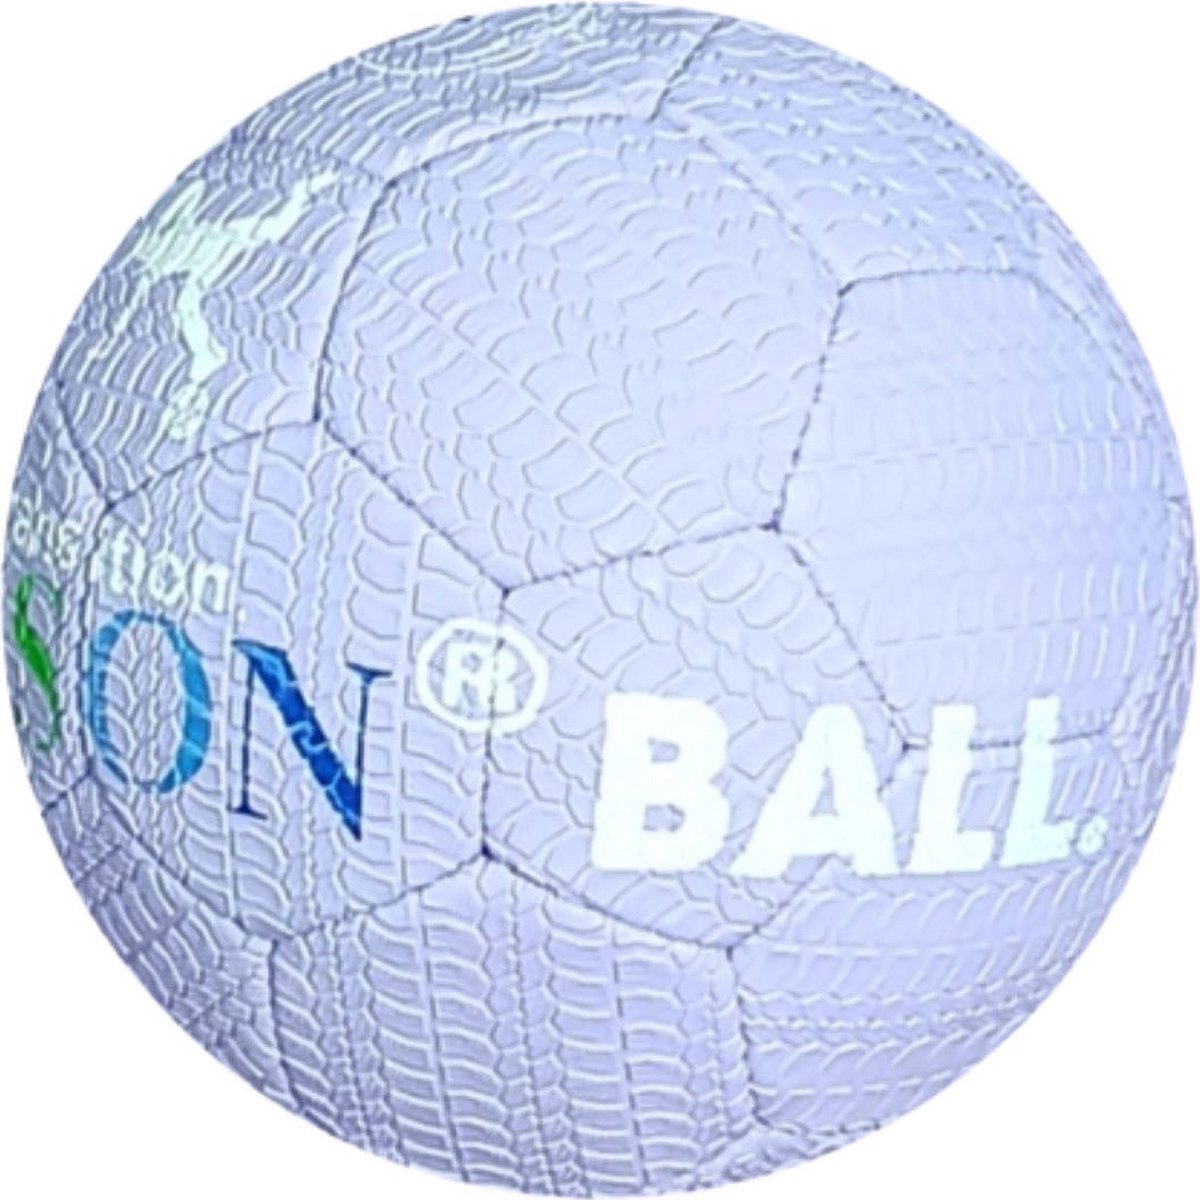 EL JACKSON BALL AMETHIST LILA - STRAAT BAL - FREESTYLE VOETBAL - STREET BALL - STRAATVOETBAL - ULTIEME GRIP BAL